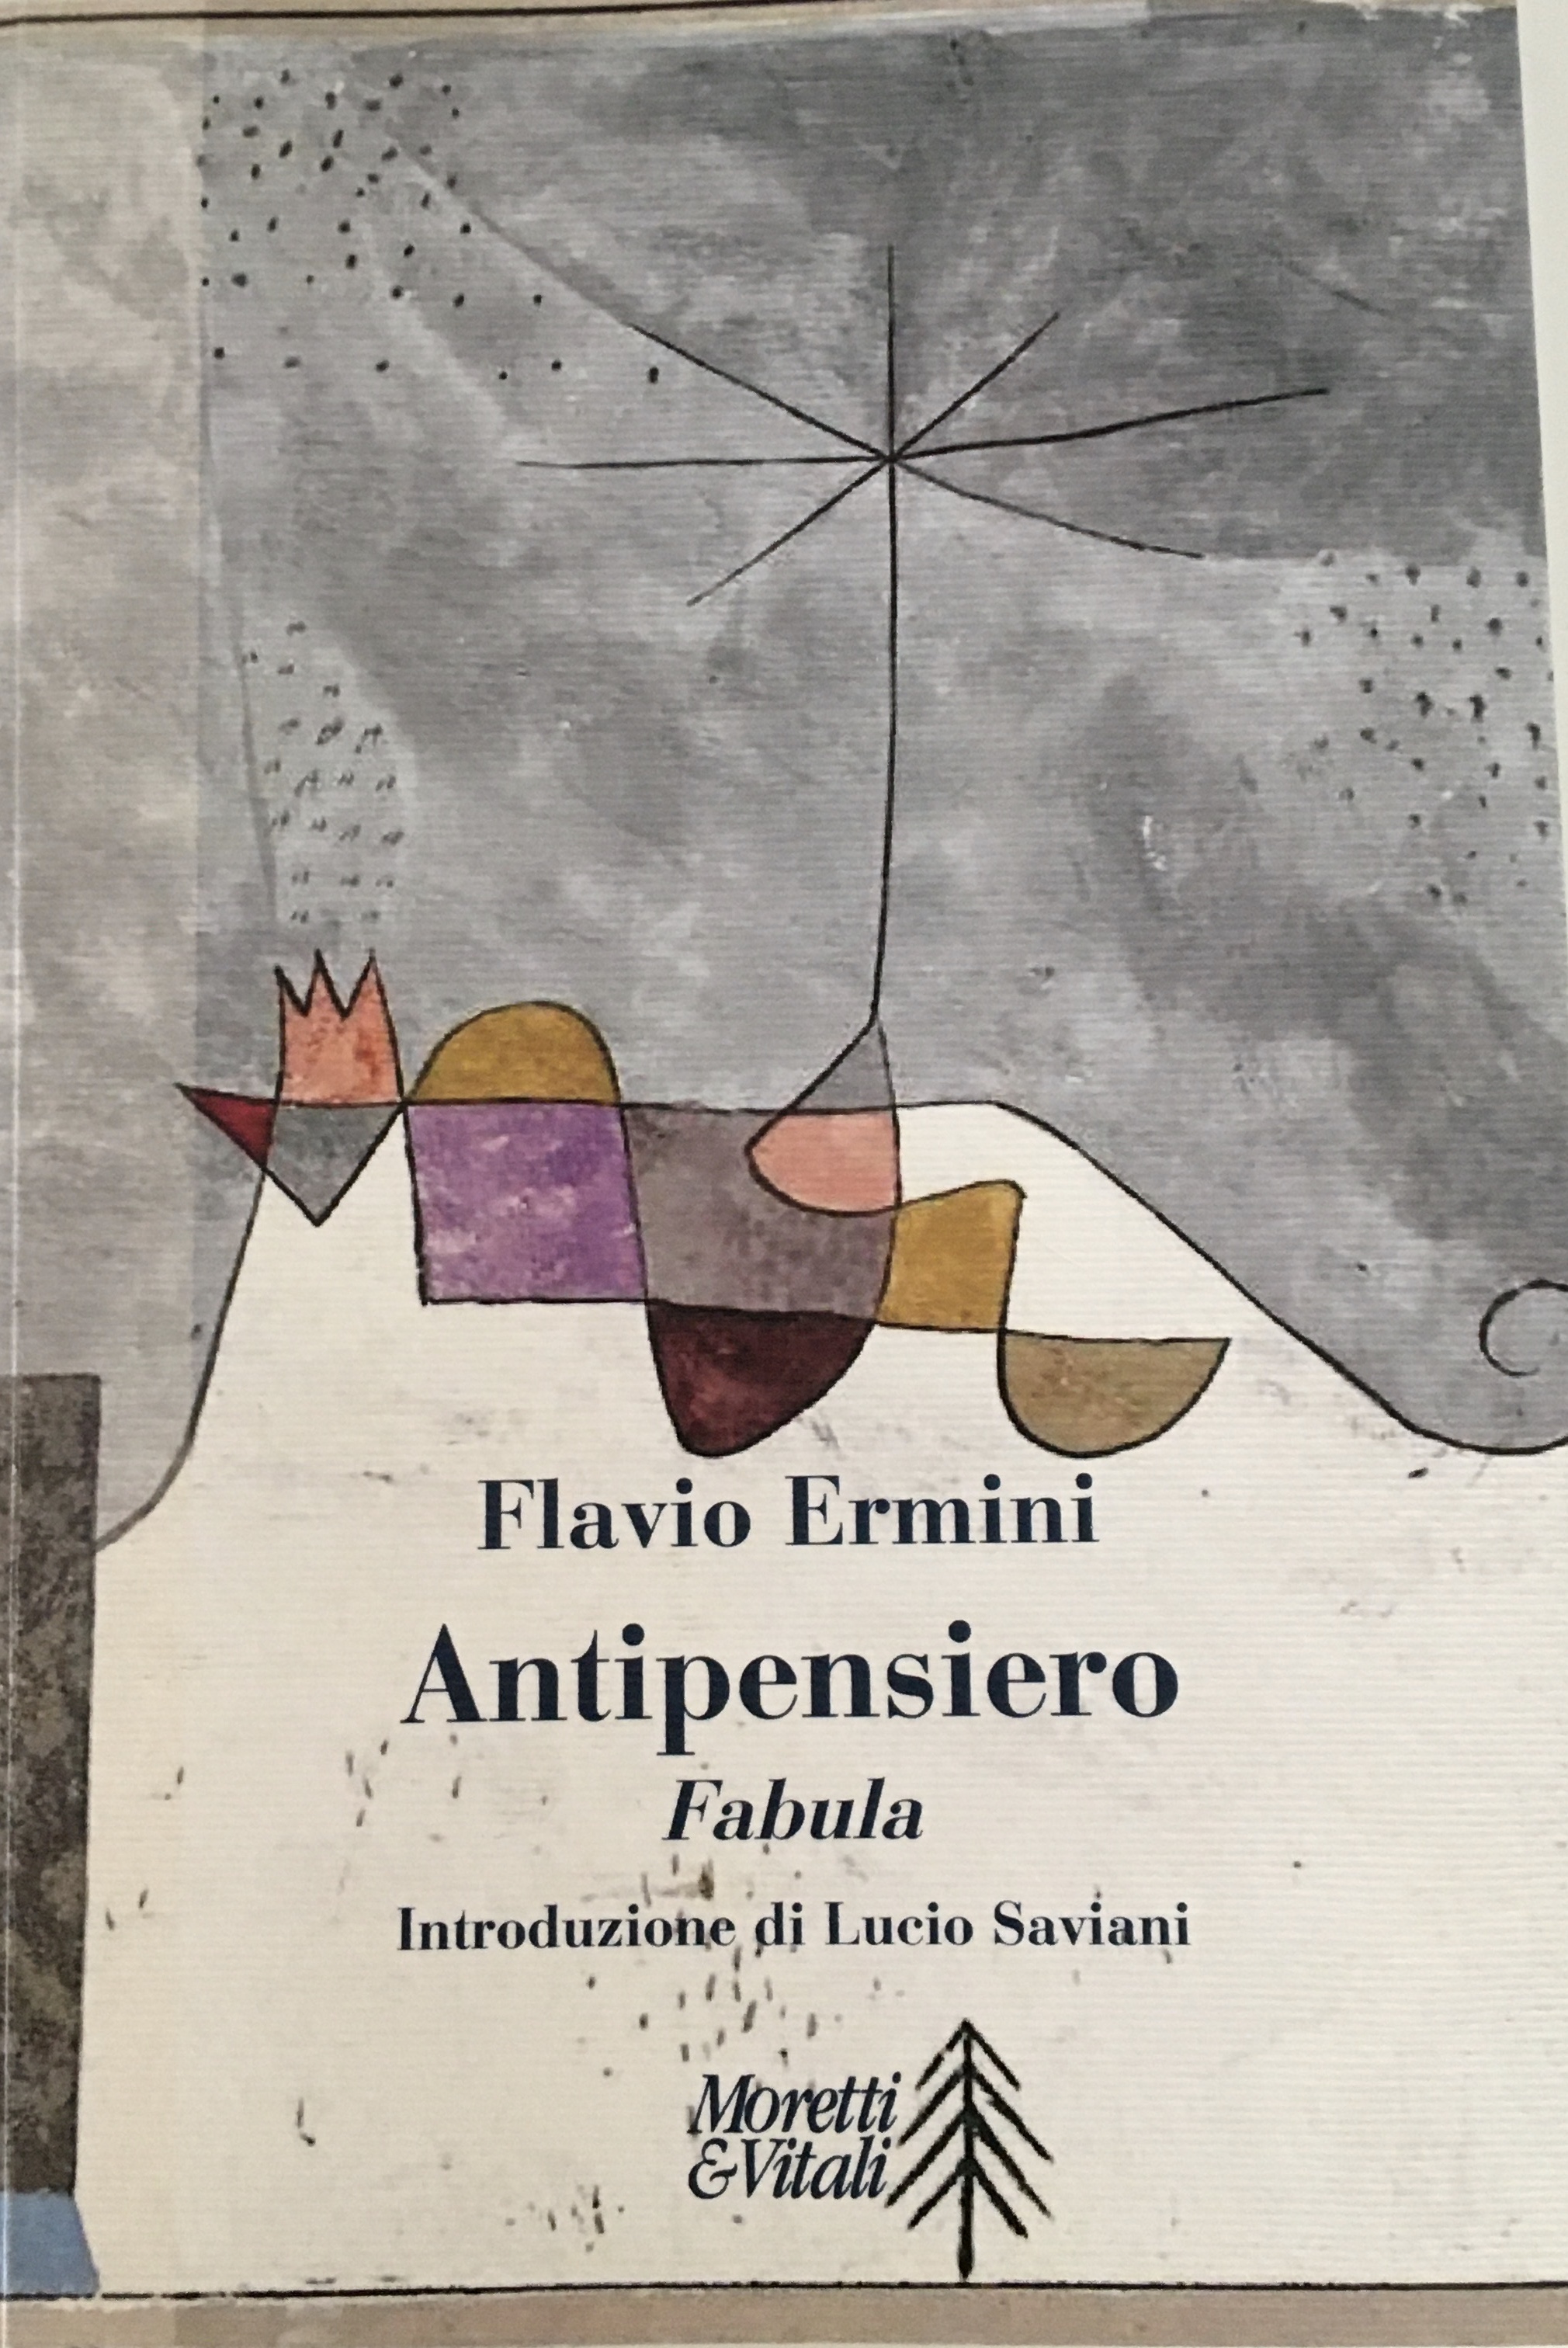 Copertina del libro "Antipensiero" di Flavio Ermini"